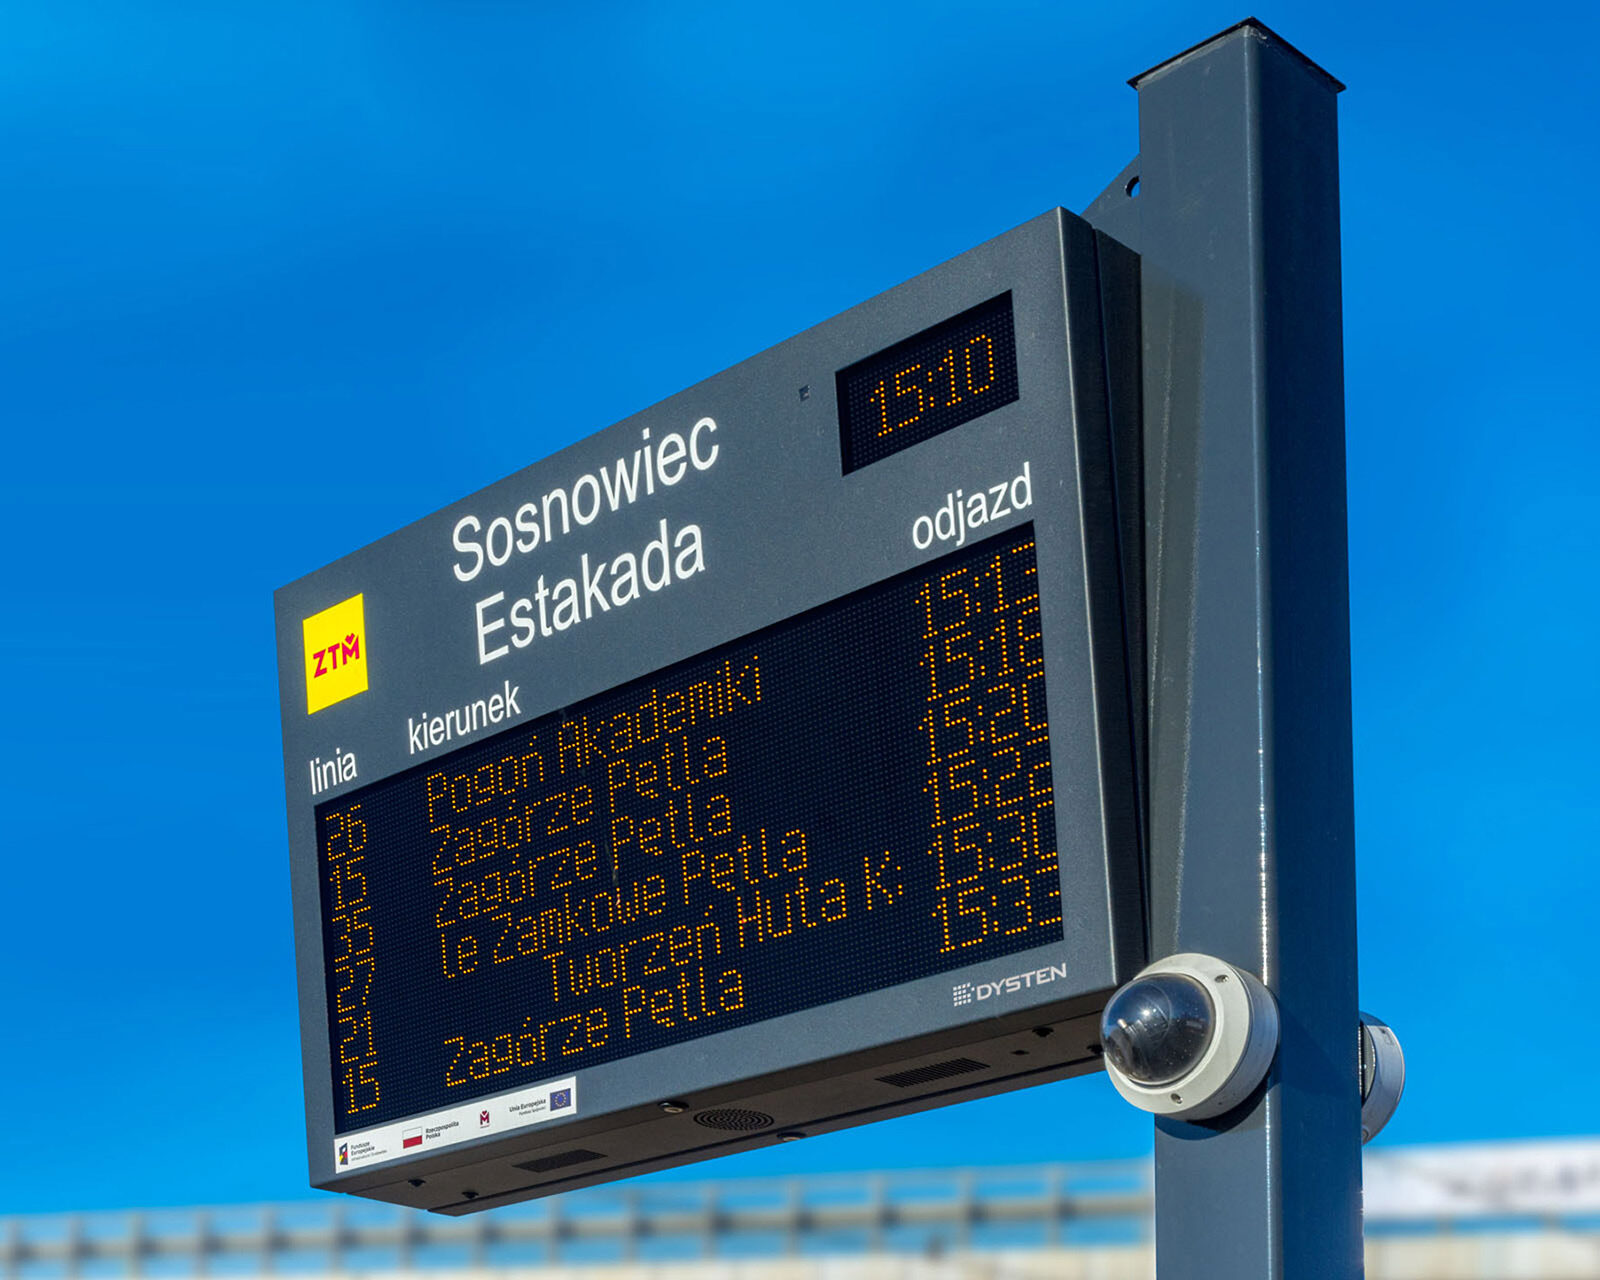 LED passenger information displays-boards. Wyświetlacze informacji pasażerskiej w technologii LED amber. SDIP GZM Metropolis, Poland. GZM Metropolia